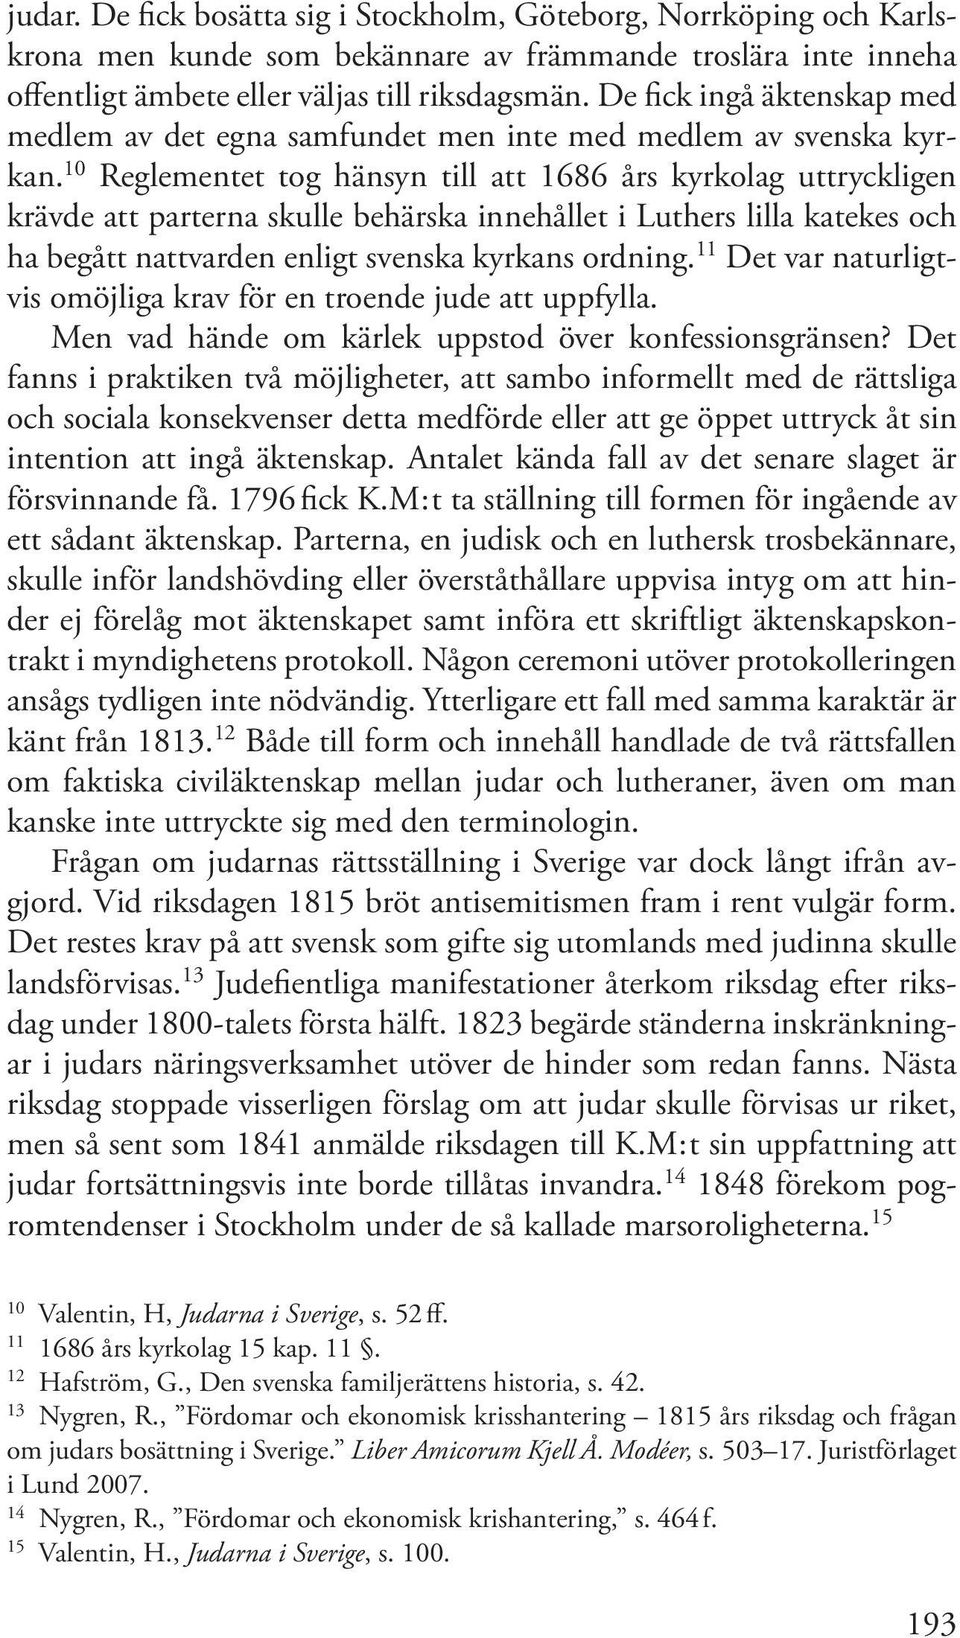 10 Reglementet tog hänsyn till att 1686 års kyrkolag uttryckligen krävde att parterna skulle behärska innehållet i Luthers lilla katekes och ha begått nattvarden enligt svenska kyrkans ordning.